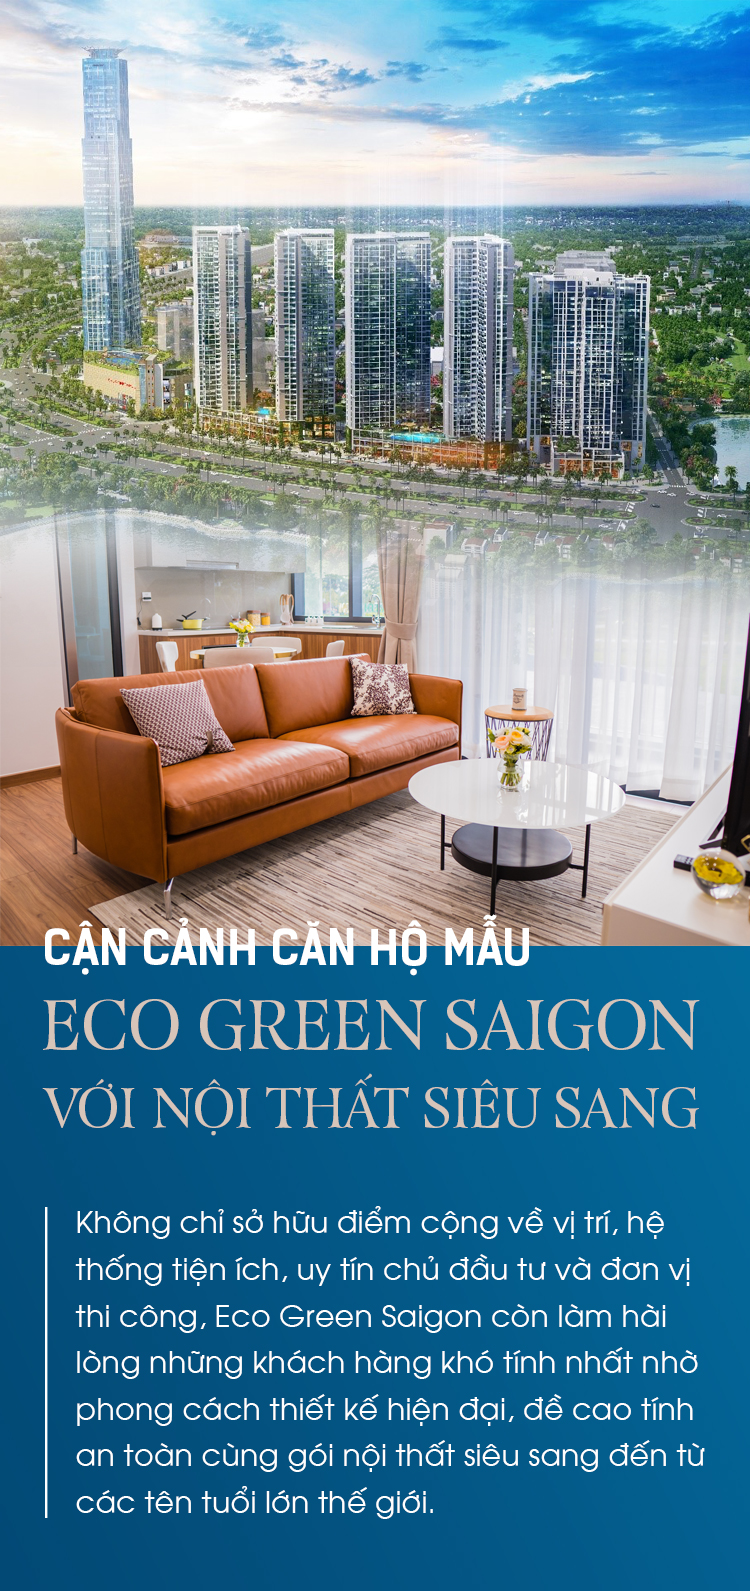 Eco Green Saigon là một hệ thống thuần thục về môi trường và chất lượng cuộc sống. Với những không gian xanh mát, thoáng đạt và được thiết kế theo dòng chảy tự nhiên, Eco Green Saigon là địa điểm lý tưởng để tận hưởng sự yên tĩnh và nghỉ ngơi giữa lòng thành phố.